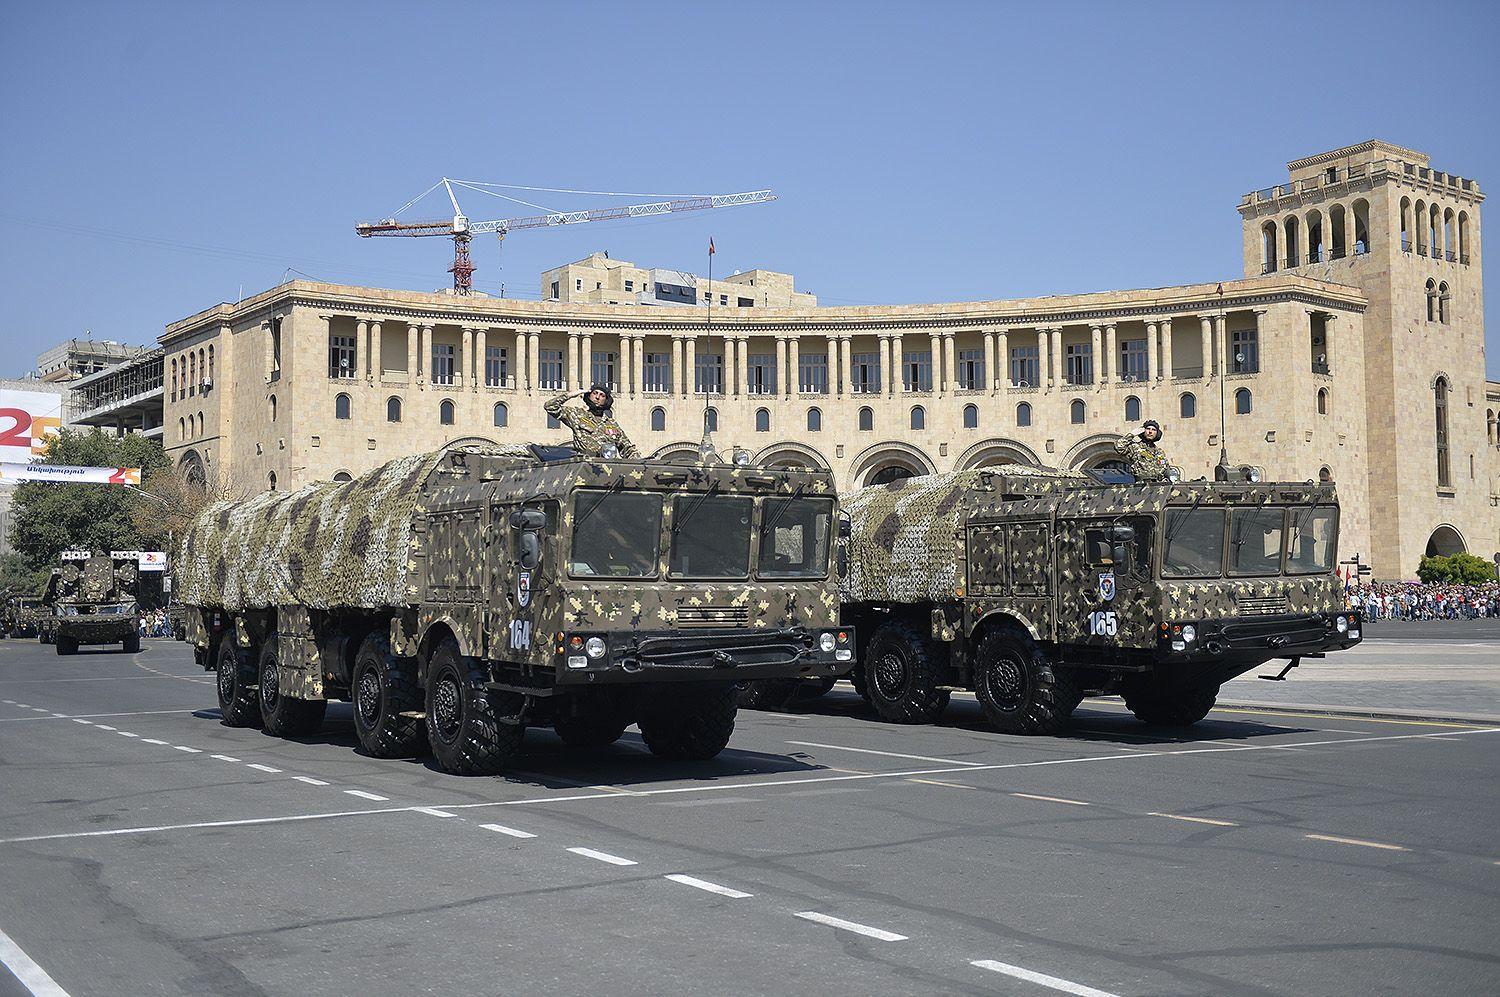 Армении вооруженная помощь ОДКБ не нужна – эксперт